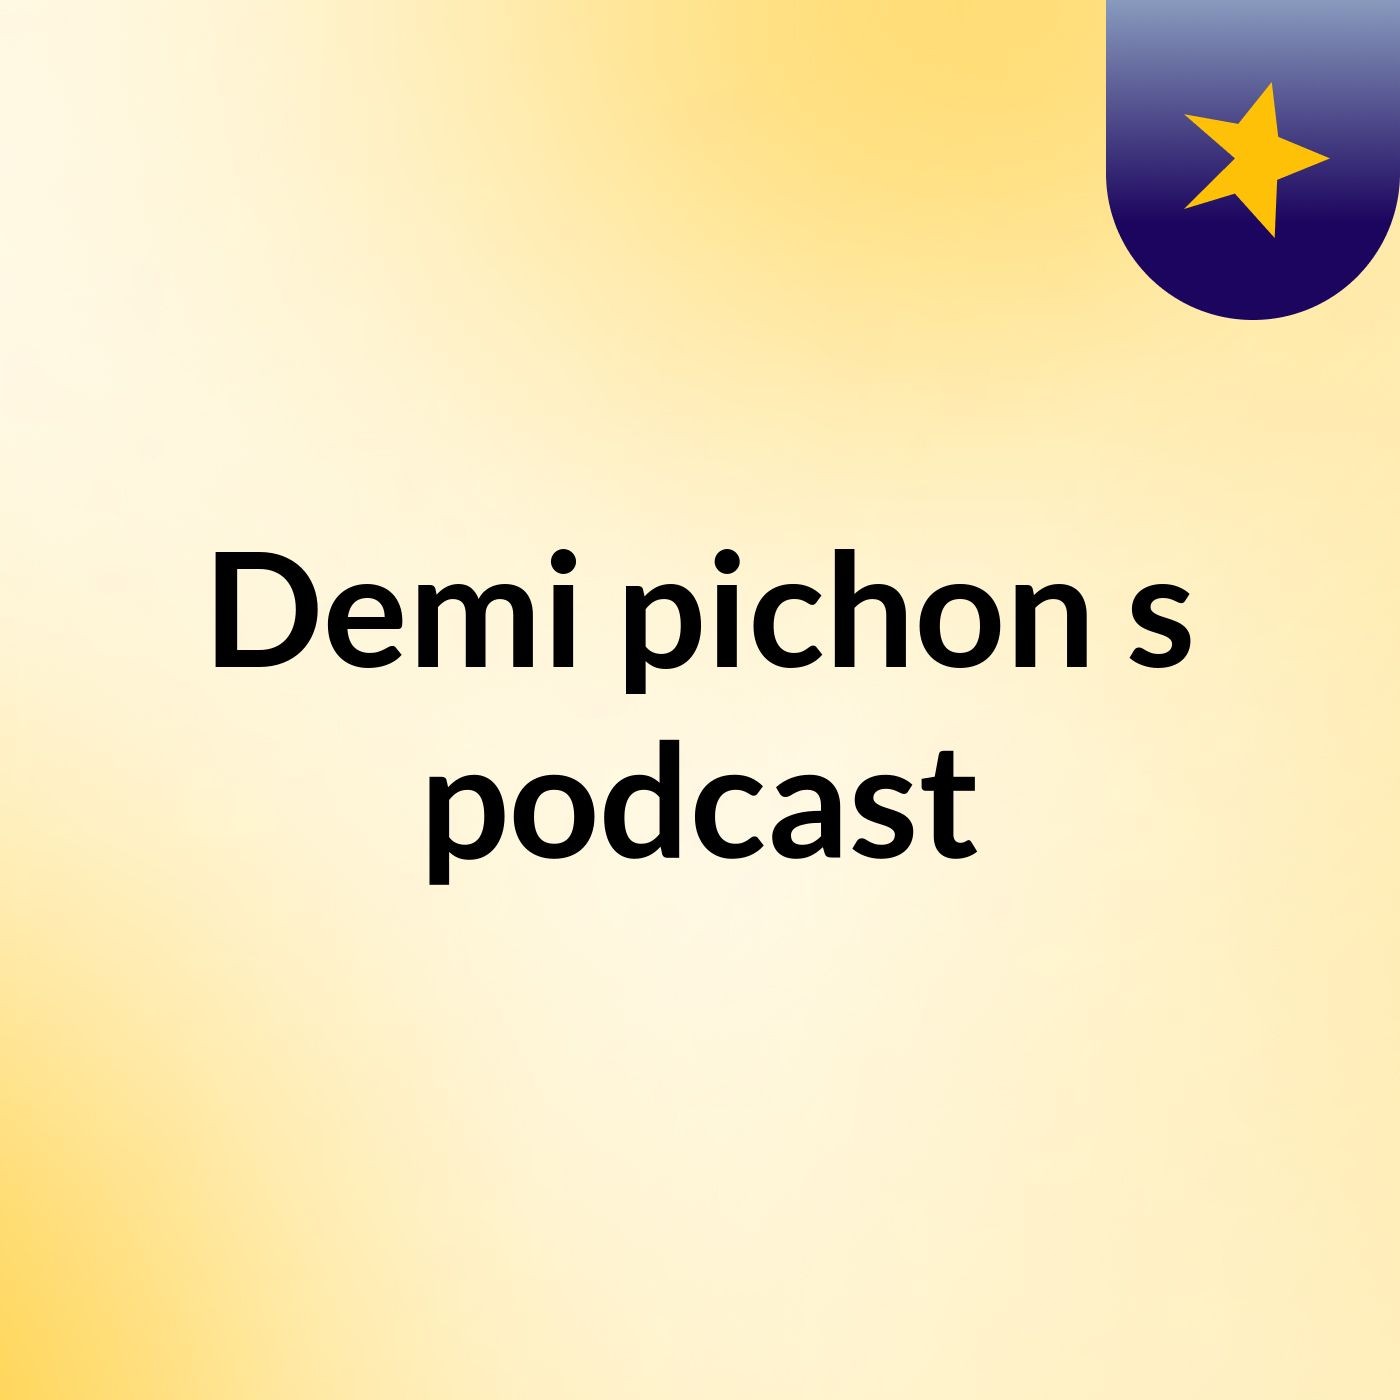 Demi pichon's podcast